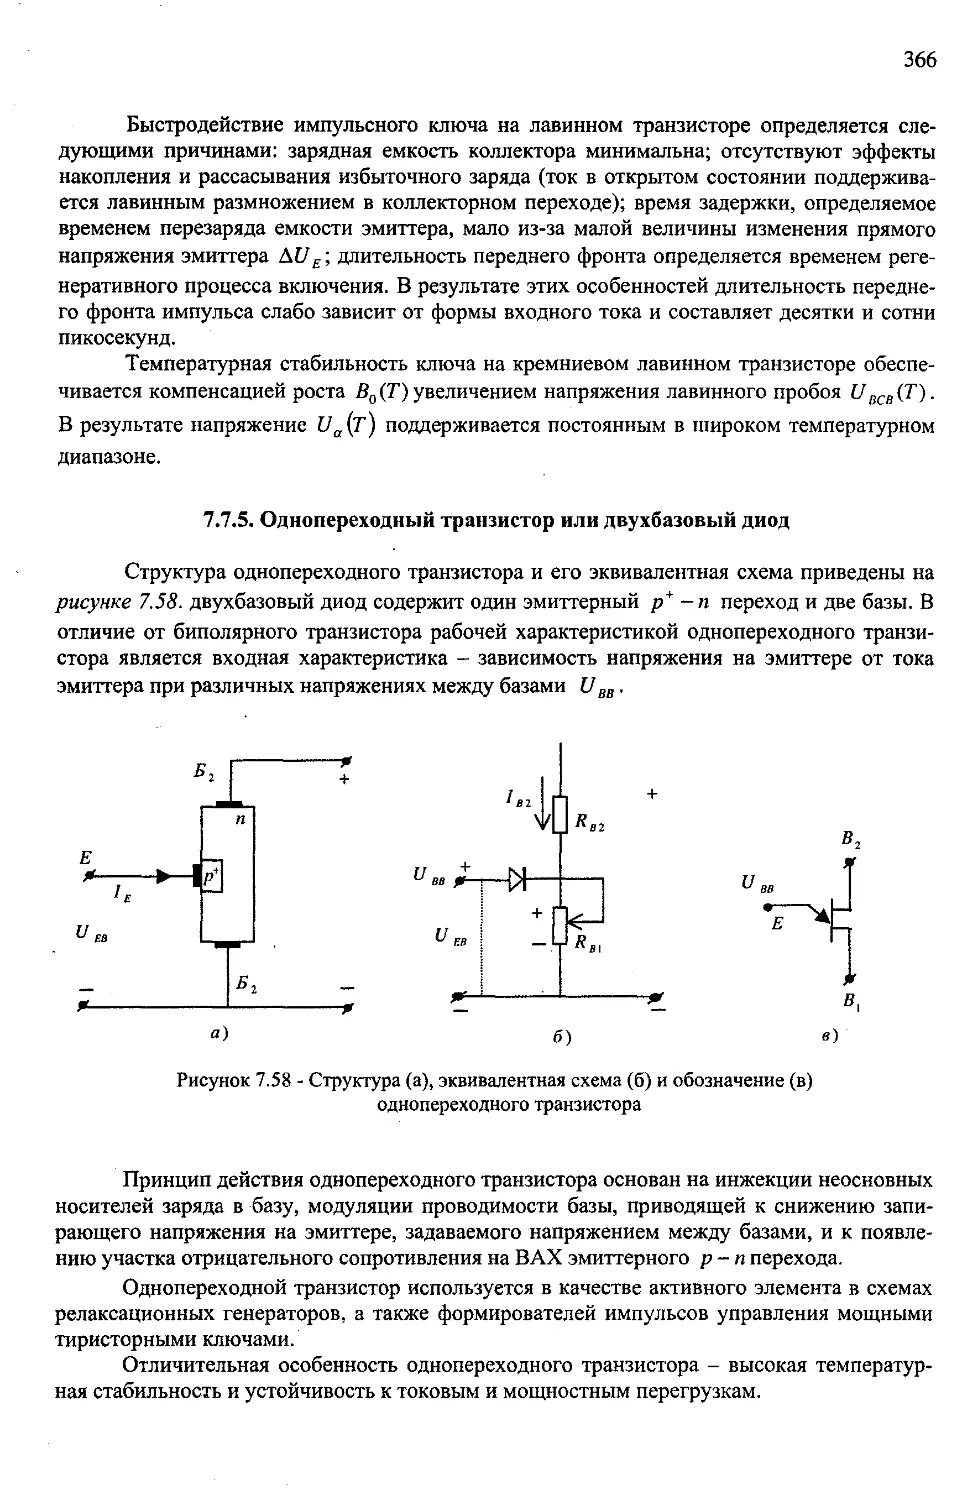 ﻿7.7.5. Однопереходный транзистор или двухбазовый дио